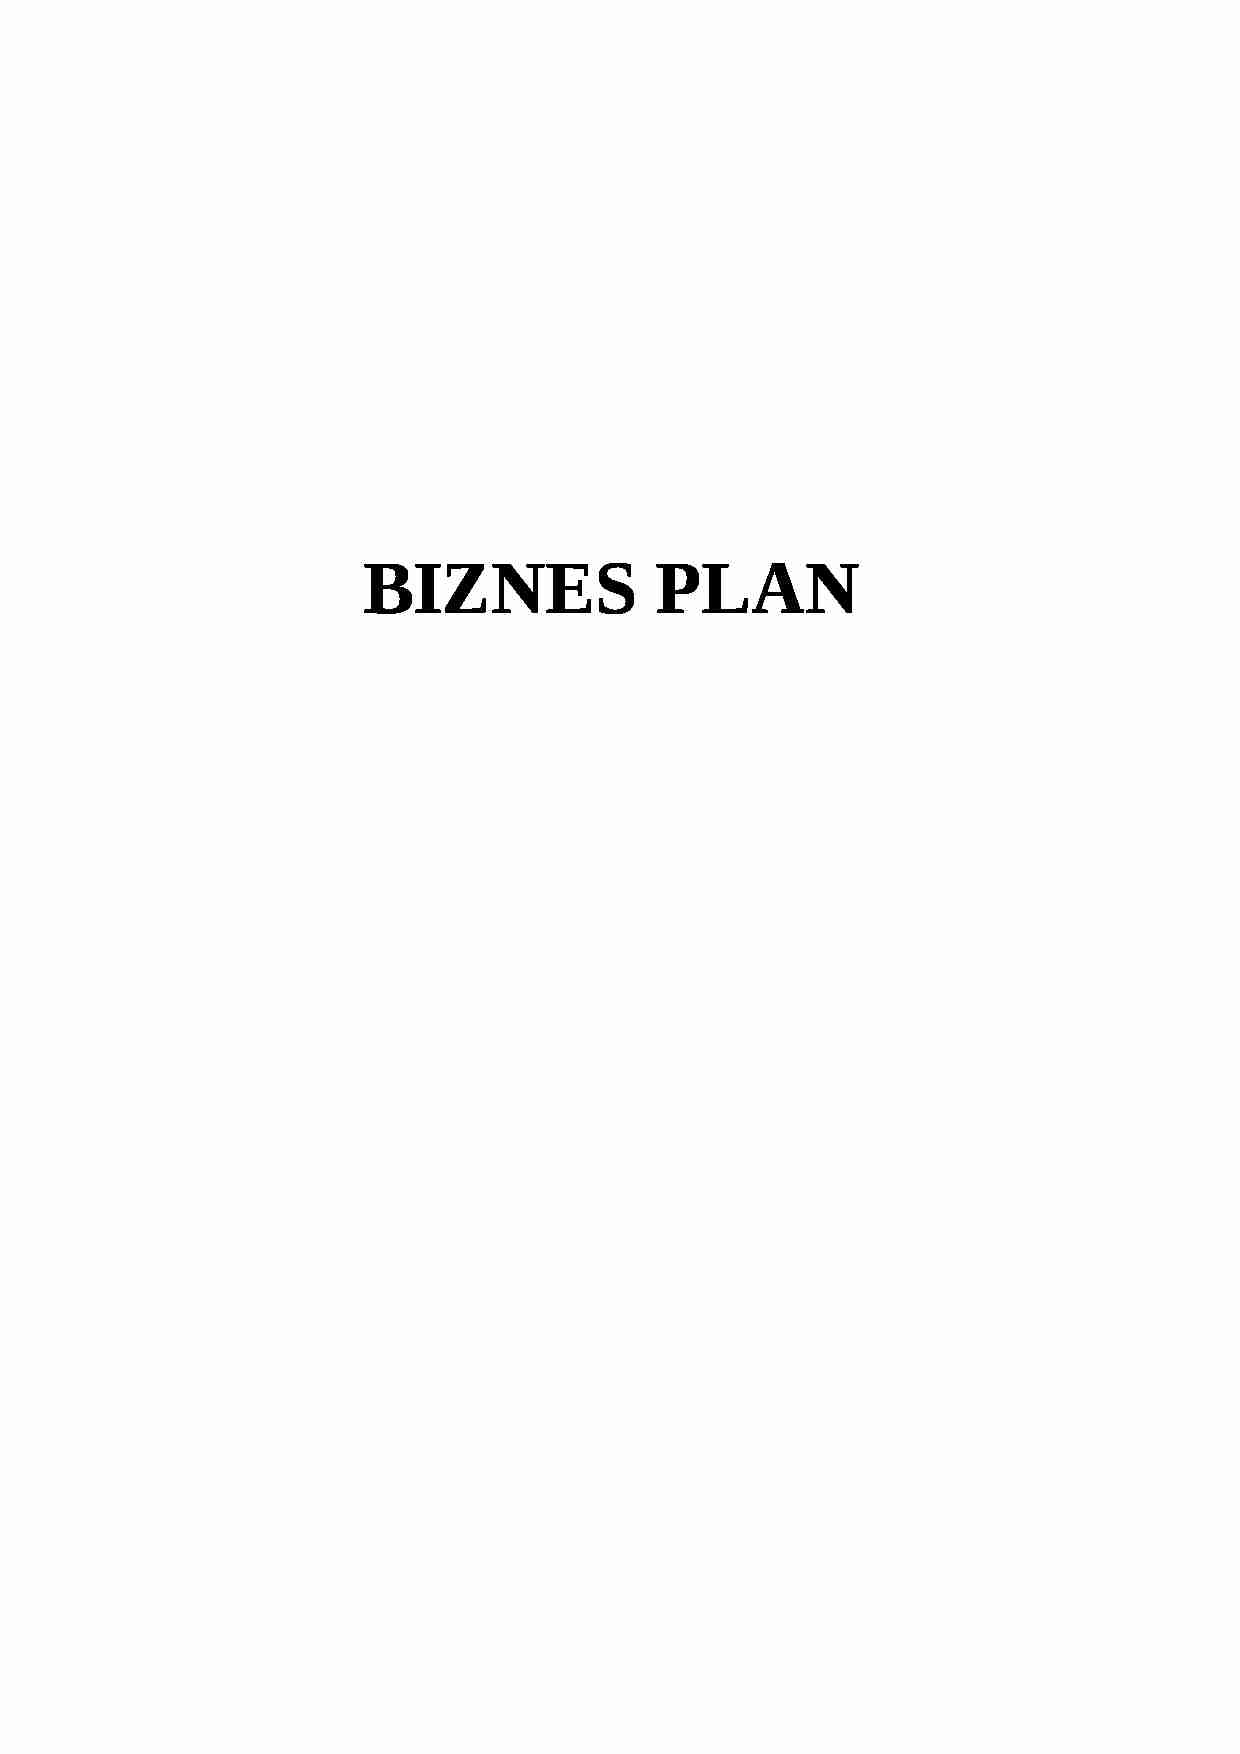 Biznes plan - wykłady MWSE - strona 1